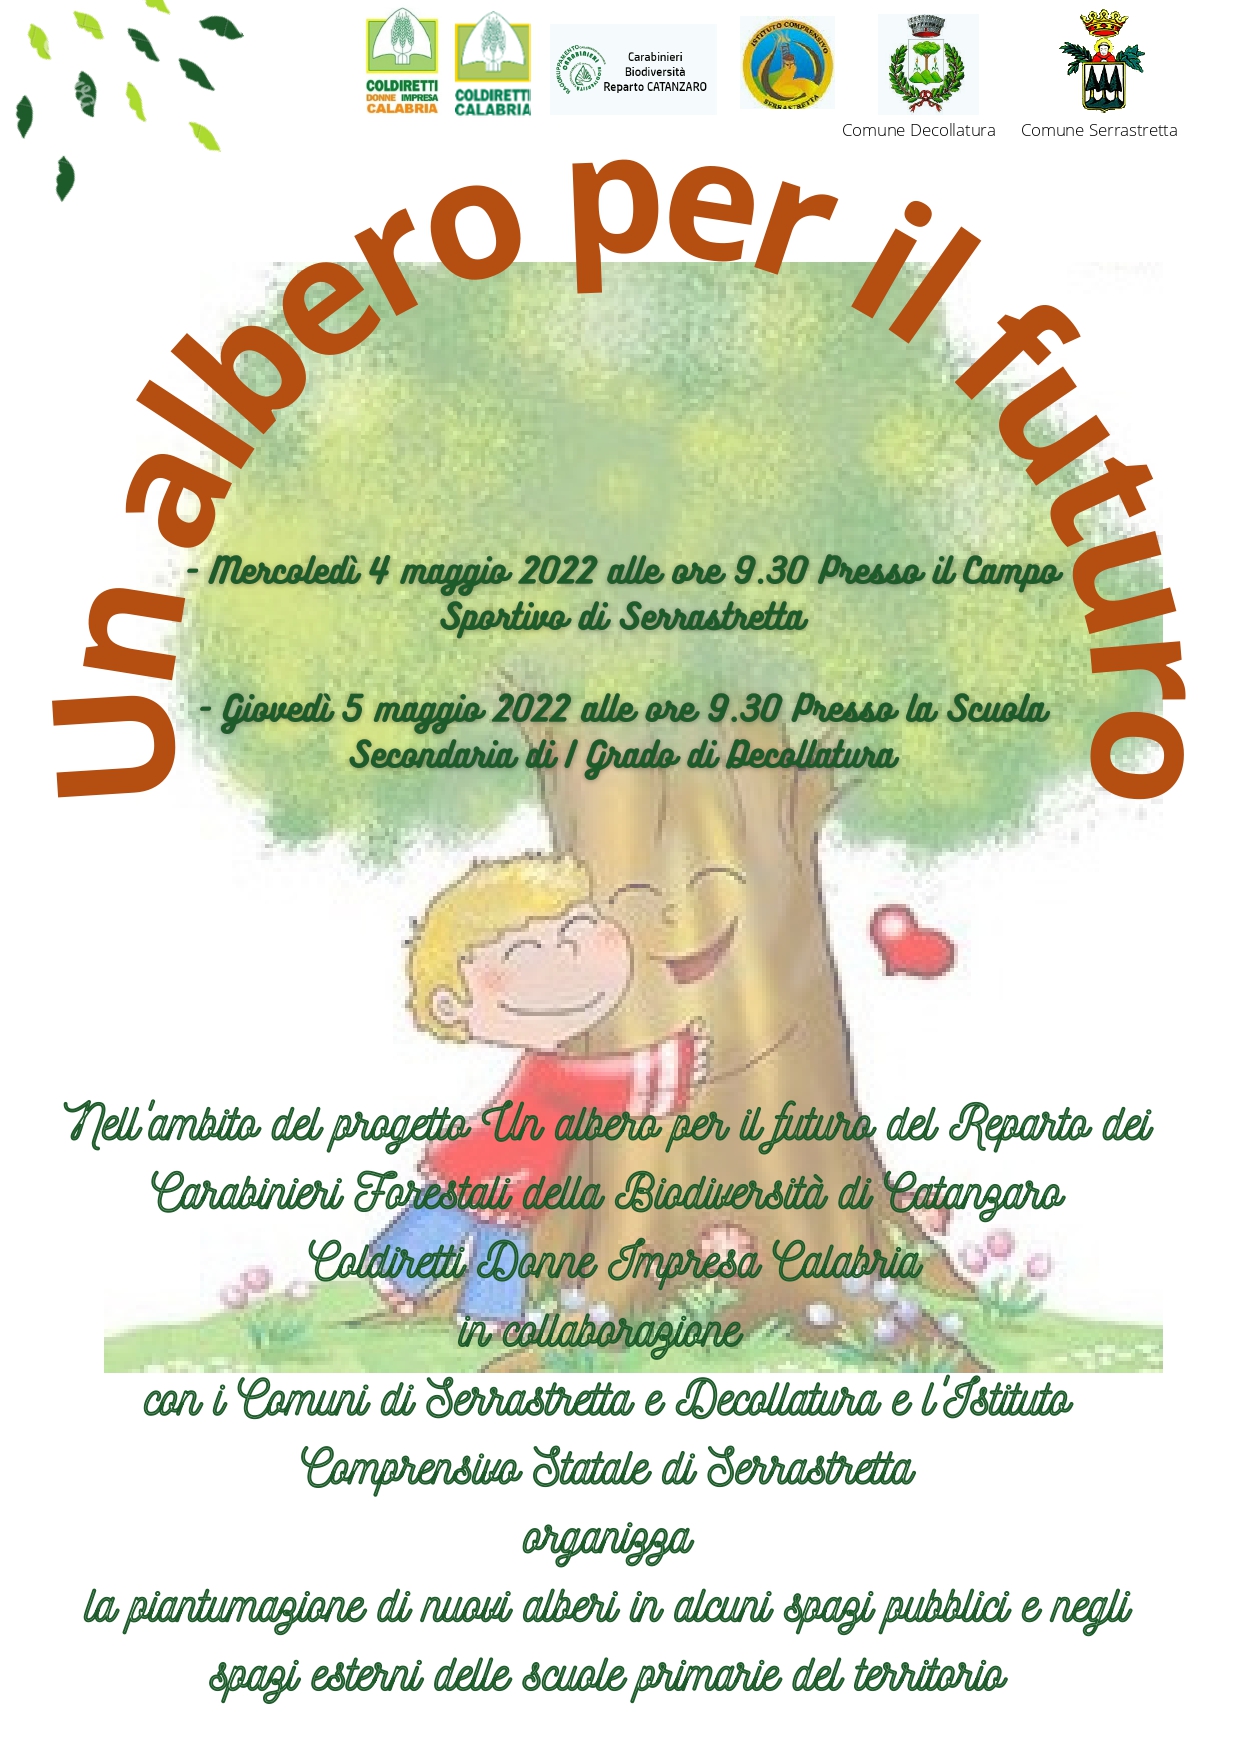 Un albero per il futuro 4 e 5 maggio Coldiretti Donne Impresa Calabria